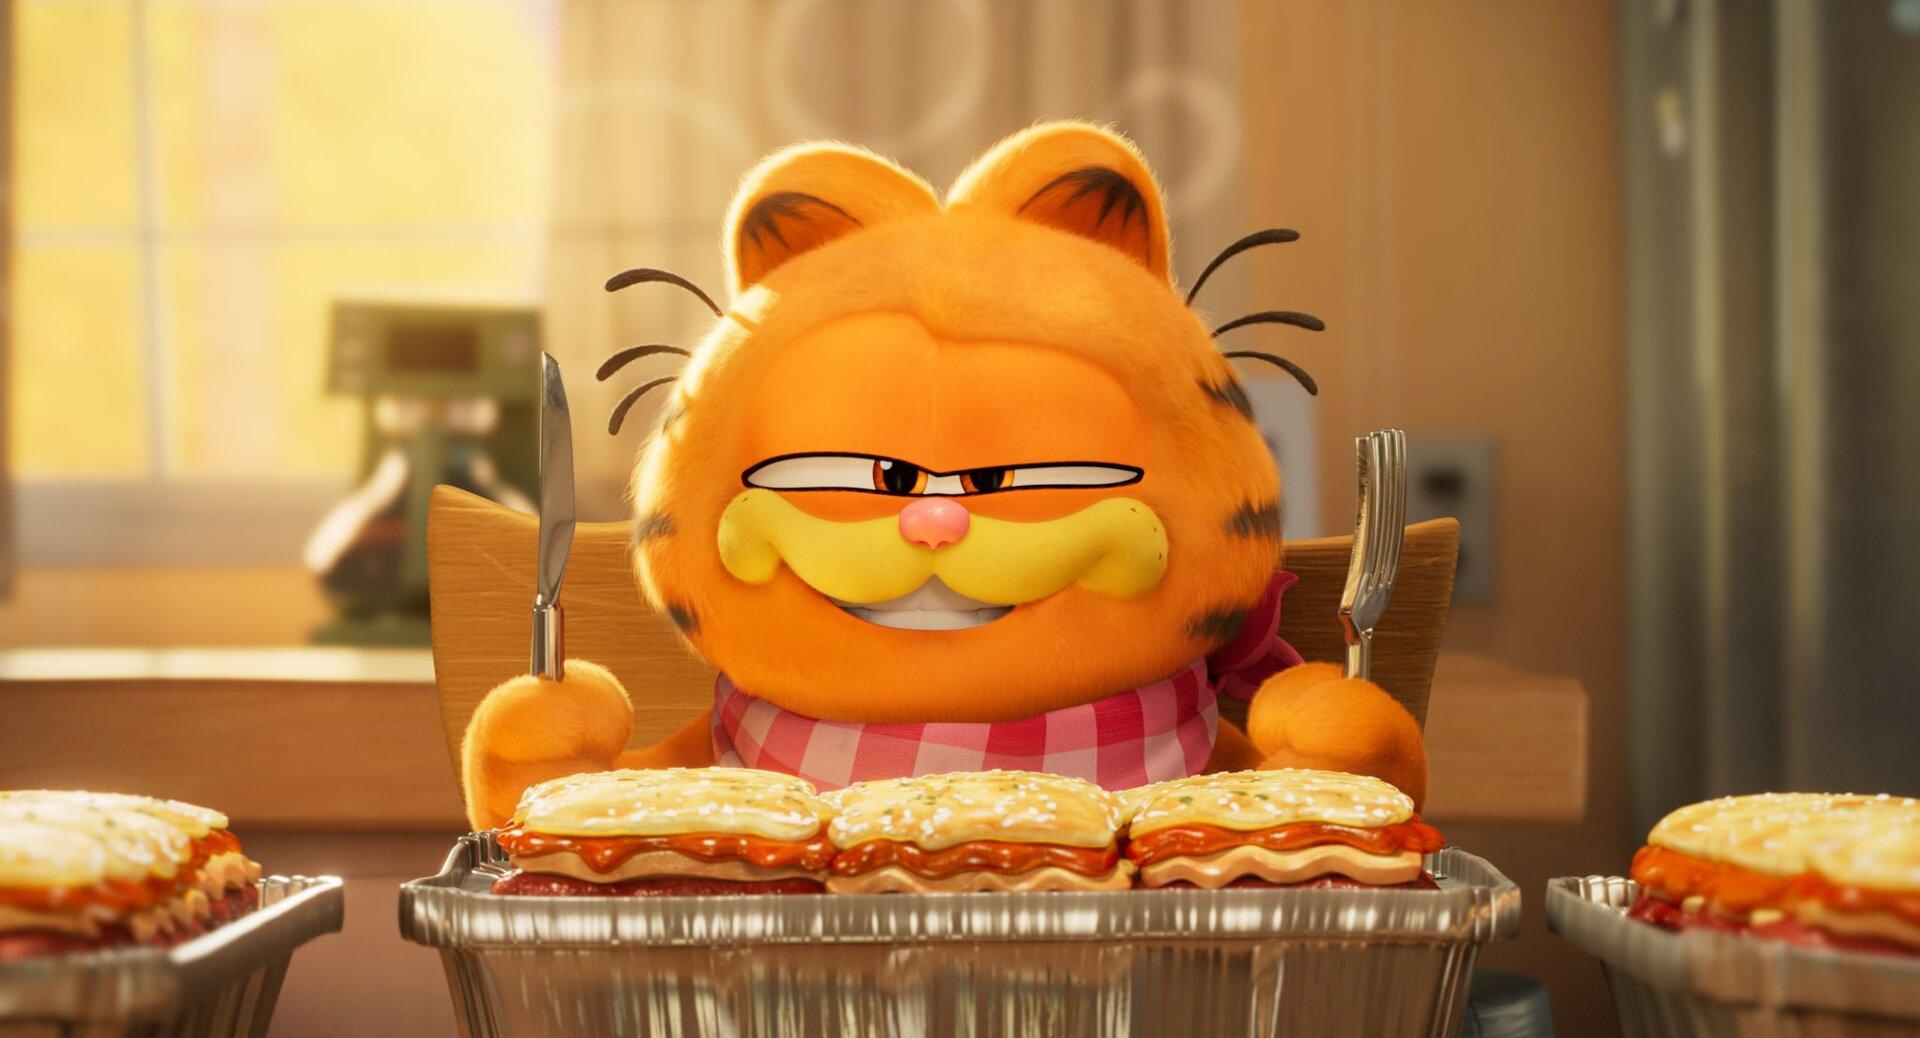 Filmkritik zu "Garfield: Hauskater wird Actionheld